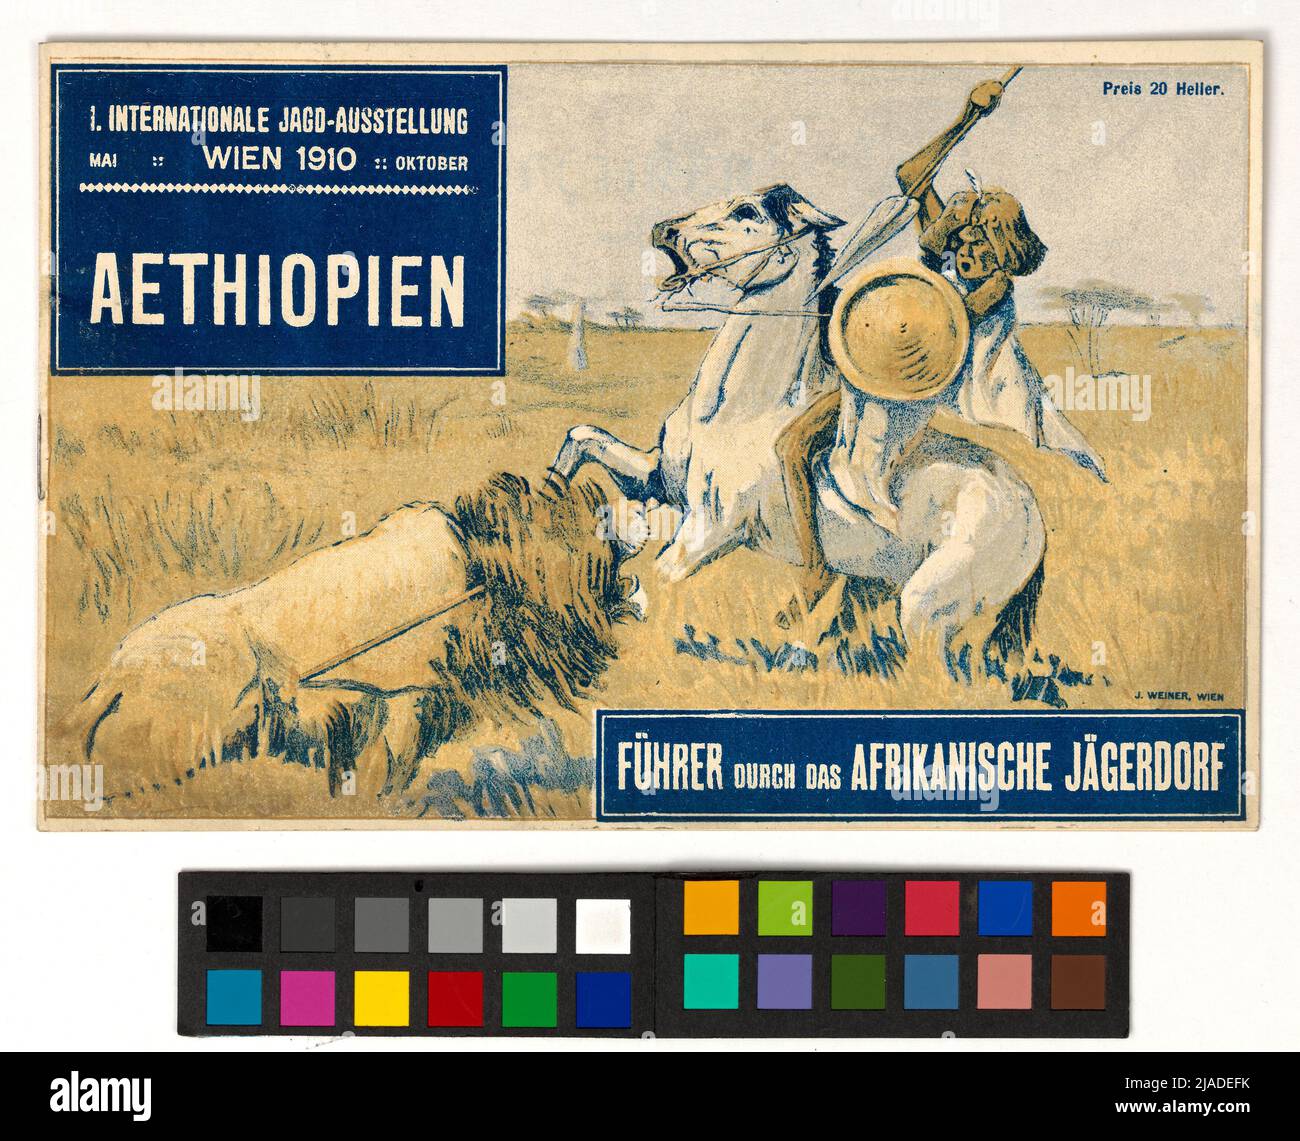 Führer durch das afrikanische Jägerdorf 'auf der' ersten internationalen Jagdausstellung 'Wien, 1910. Unbekannt Stockfoto